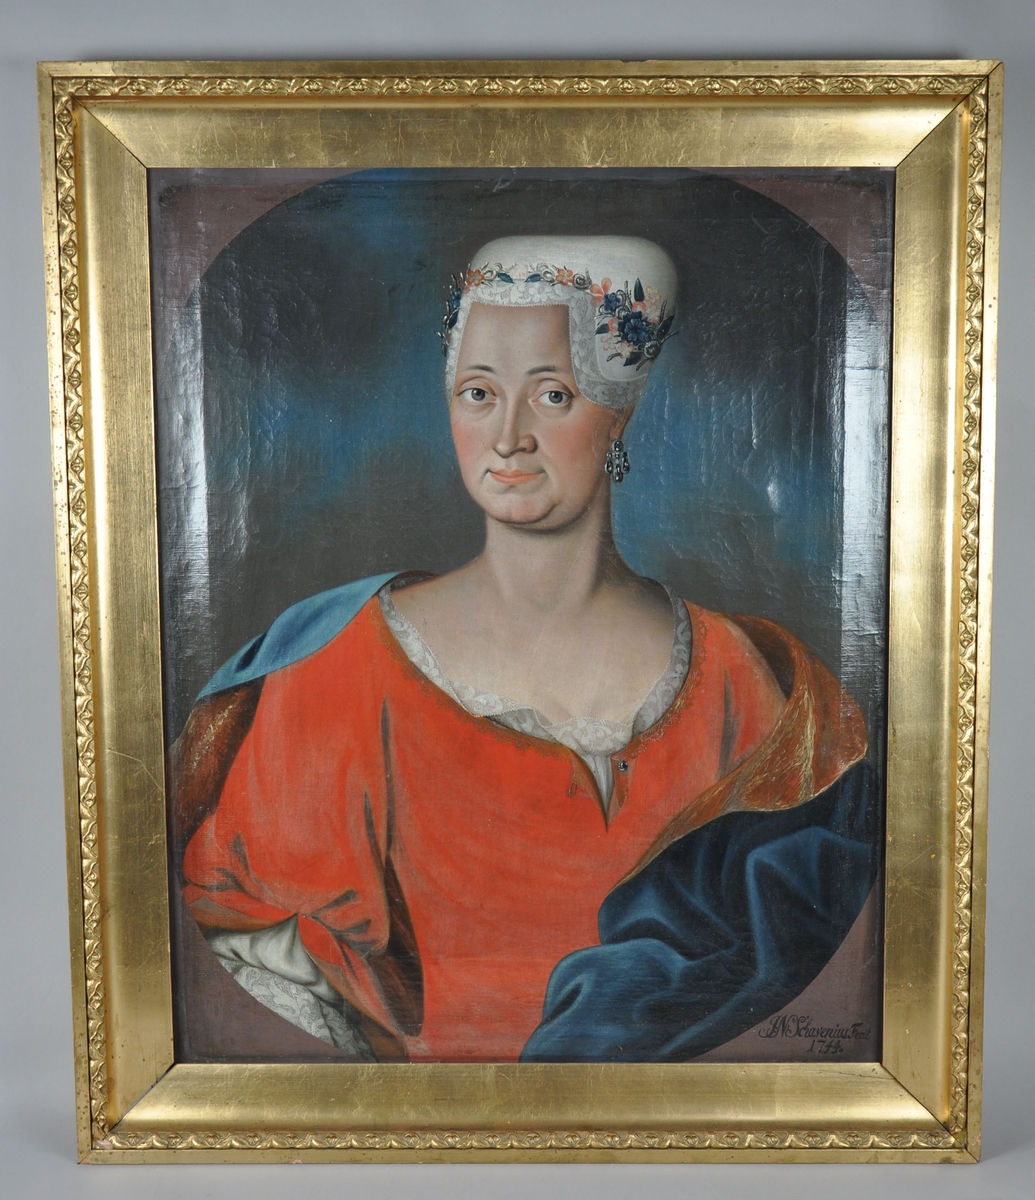 Stående portrettmaleri. Frontalportrett av dame i rød kjole og hvit hodeplagg med blomsterdekor. Damen har øredobb. 
Maleriet har gullbelagt, profilert ramme av tre.